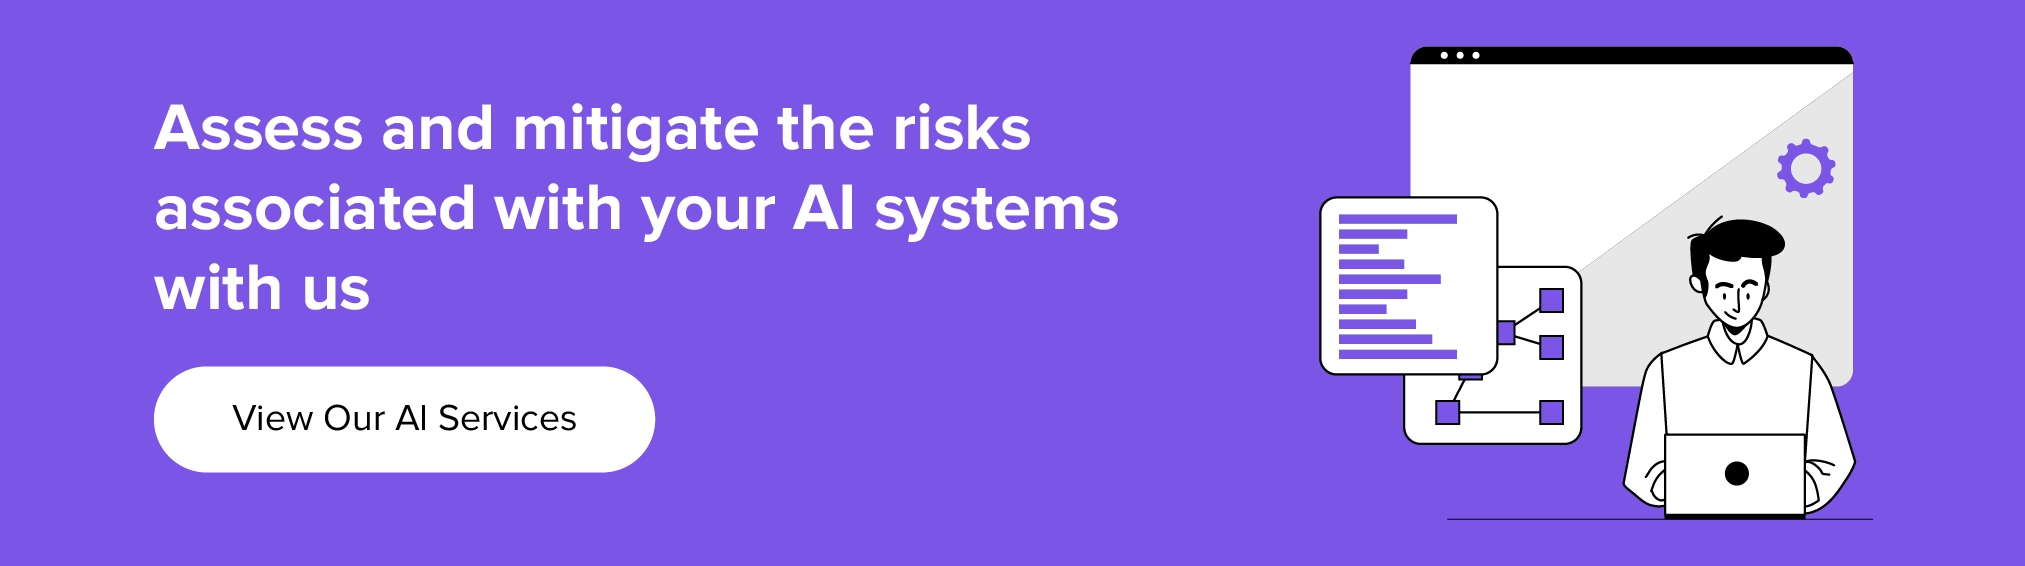 AI システムに関連するリスクを評価し、軽減するために当社と協力してください。